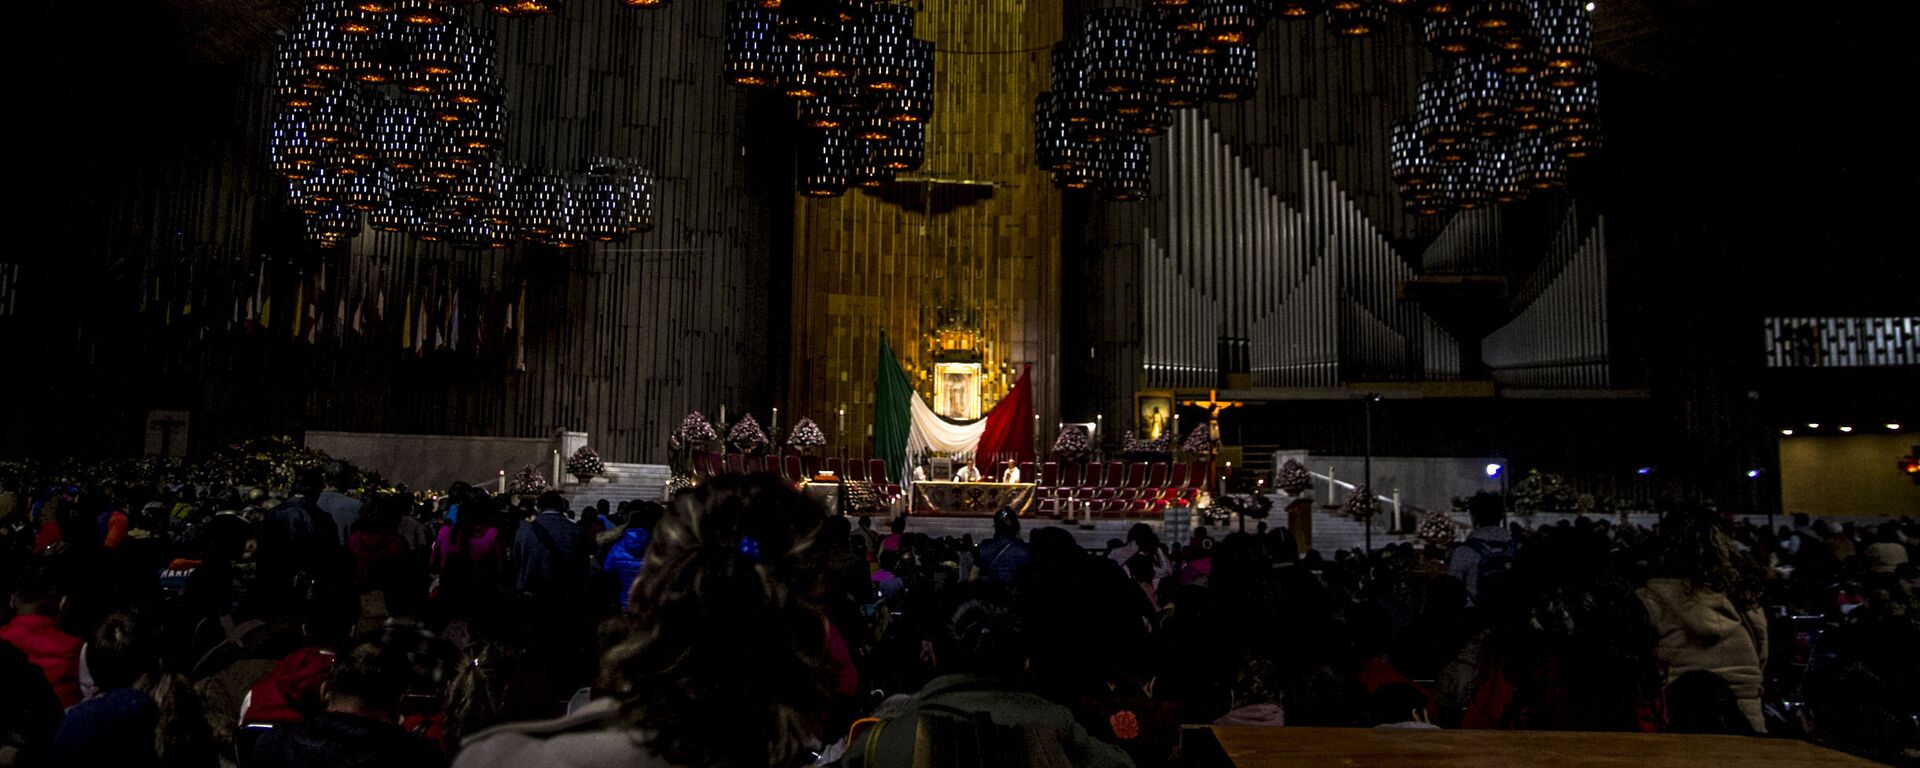 Una de las misas durante el festejo de la virgen en la Basílica de Guadalupe (Archivo) - Sputnik Mundo, 1920, 23.11.2020